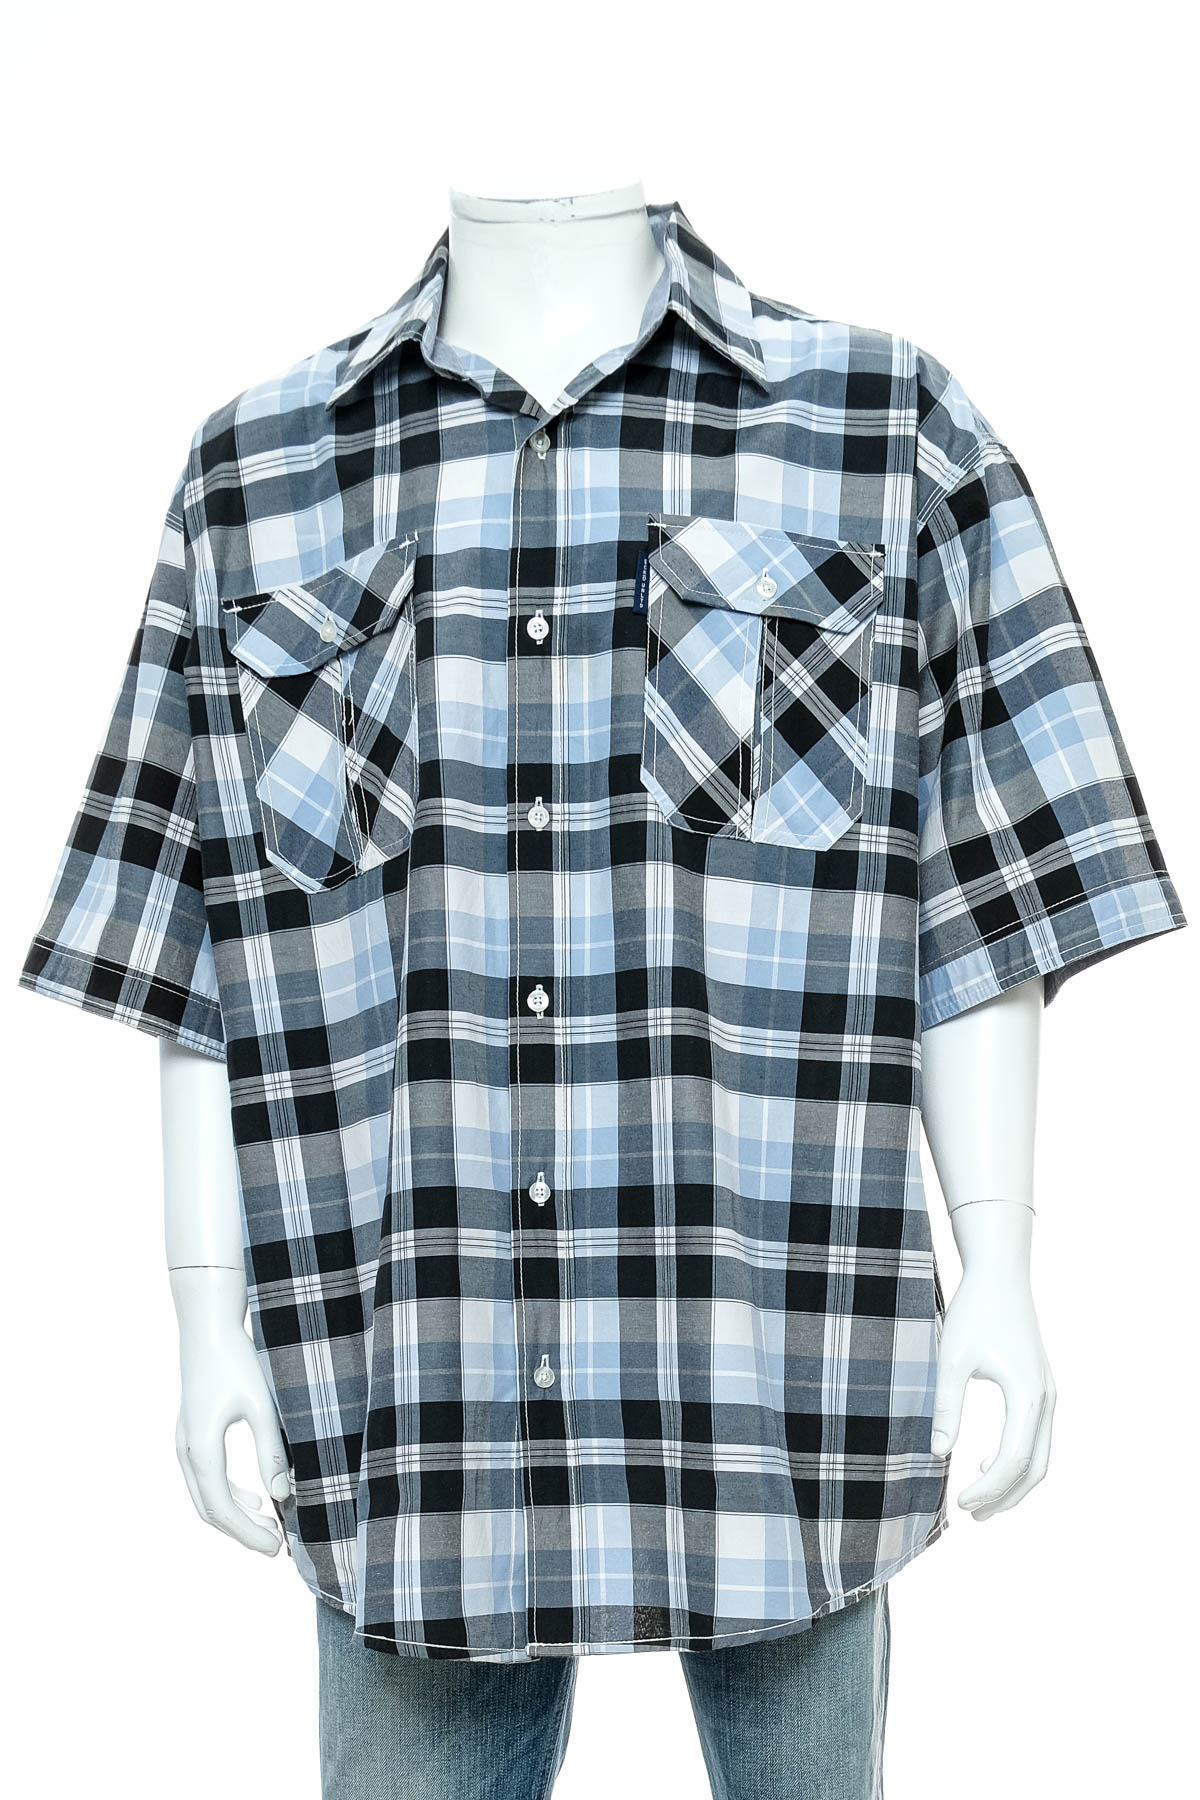 Men's shirt - Ecko Unltd - 0